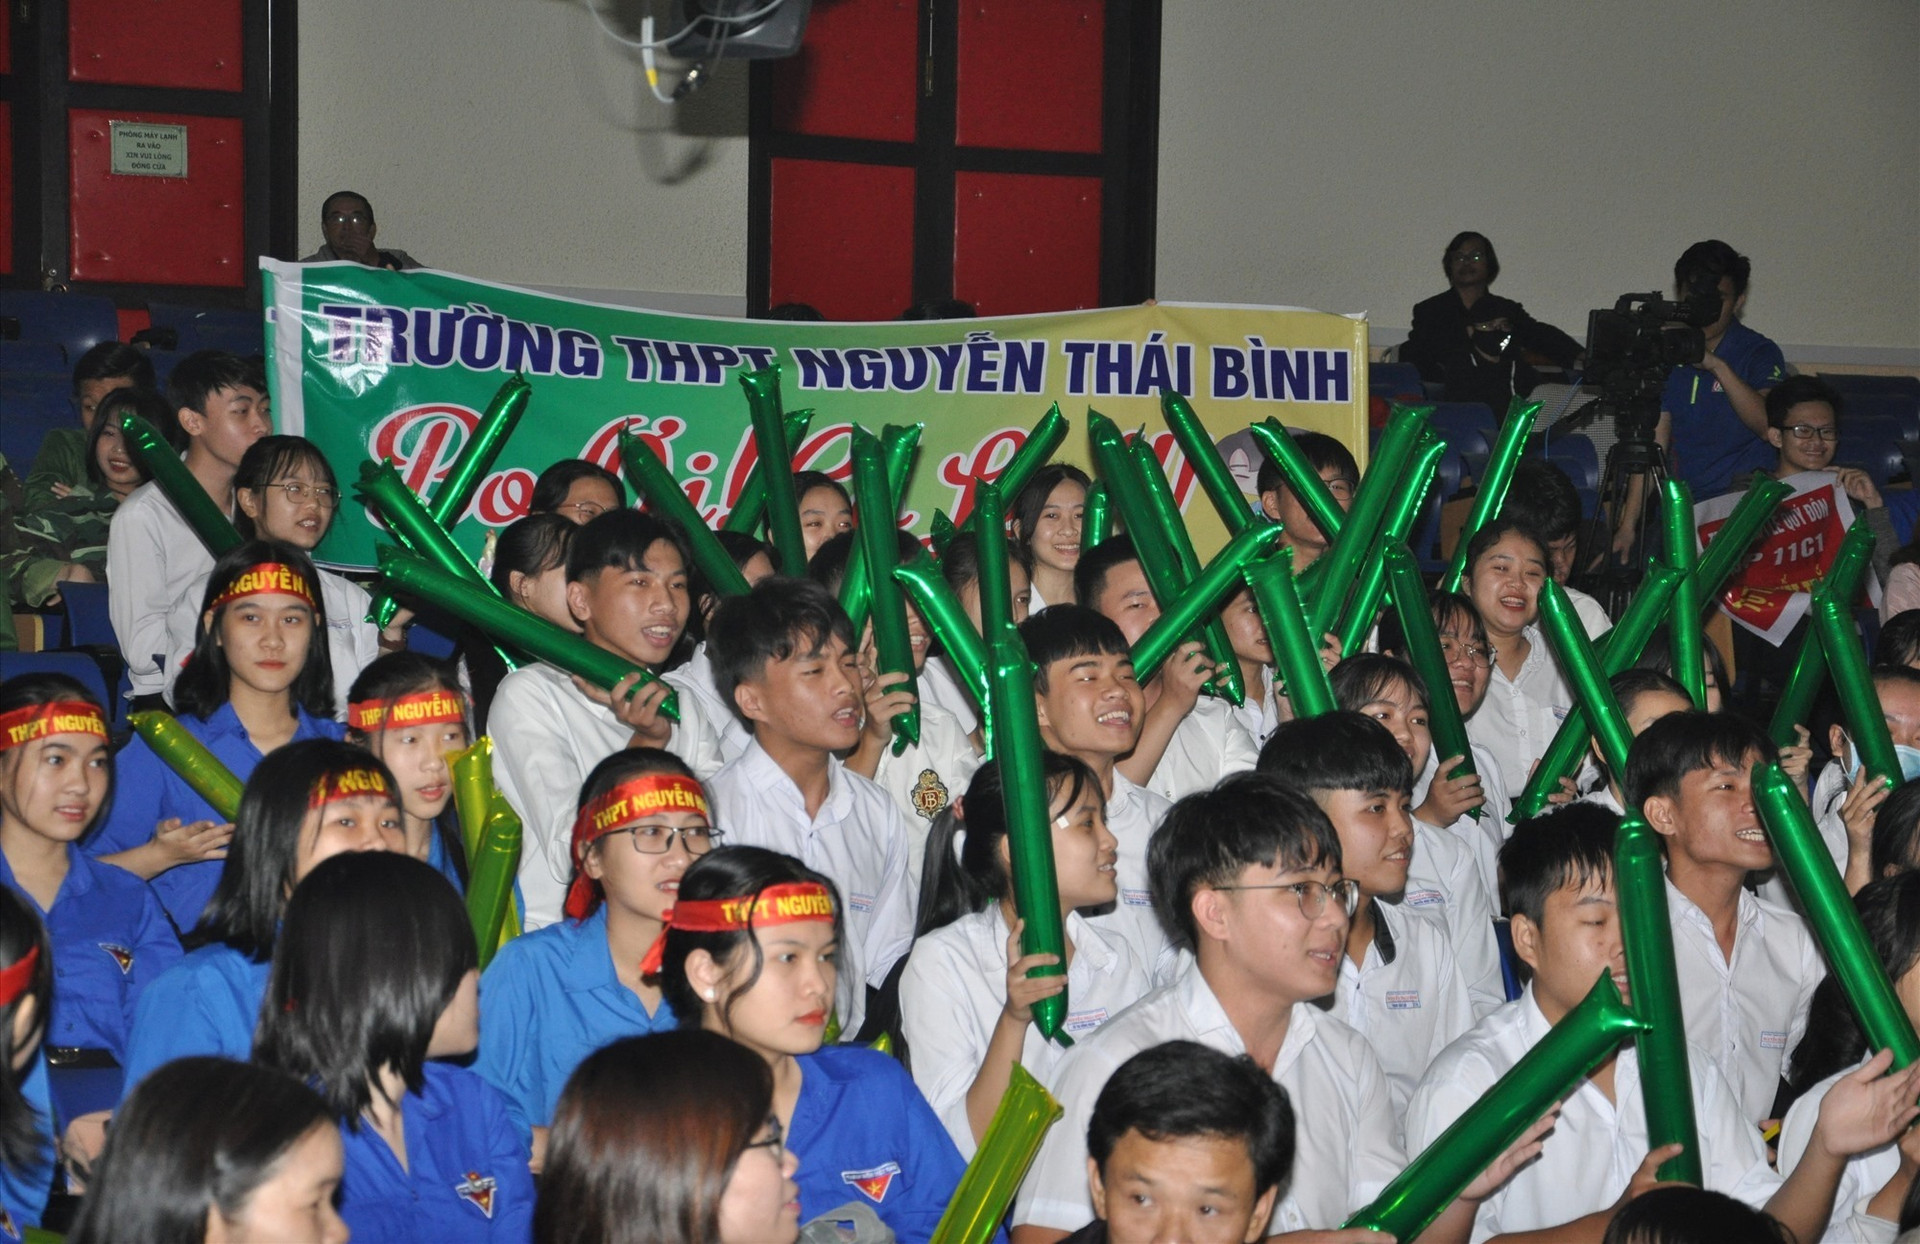 Cổ động viên Trường THPT Nguyễn Thái Bình đi theo và cổ vũ đã được đền đáp xứng đáng bằng chiến thắng của chàng “Bo” Hoàng Đỗ Thanh Thuận. Ảnh: X.P